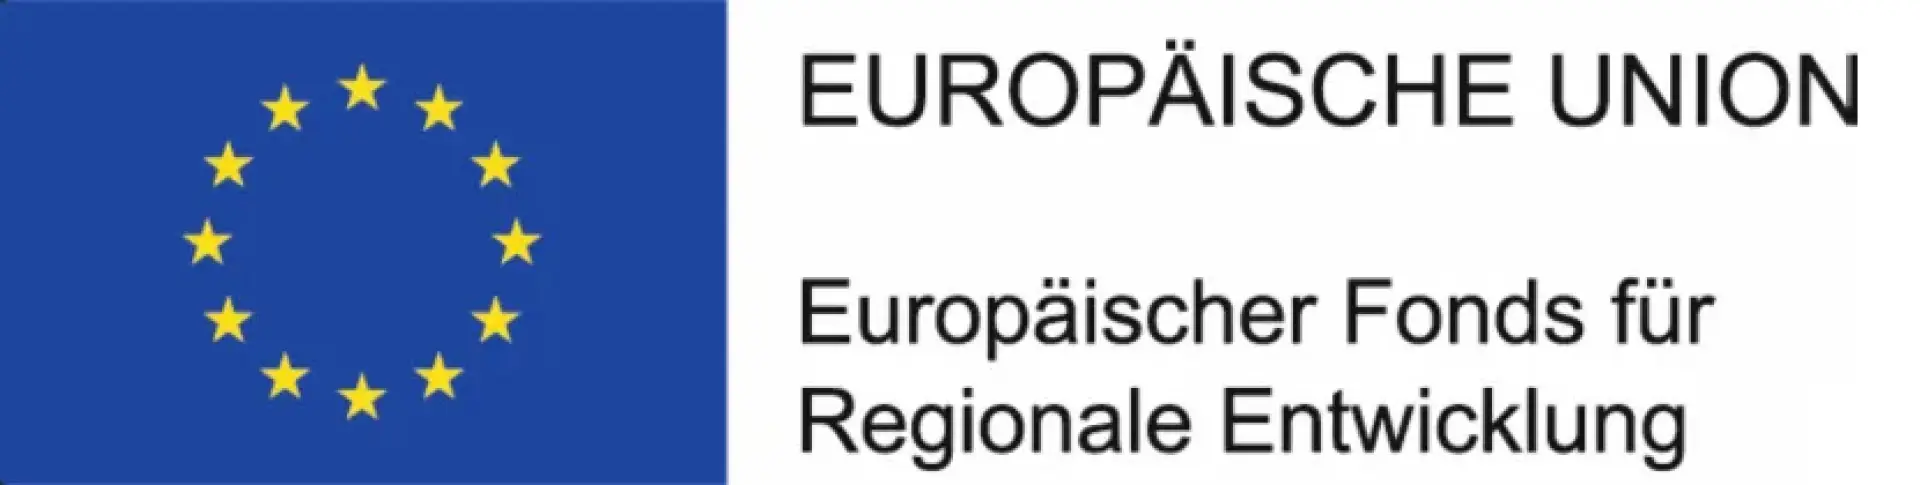 EU Fonds für regionale Entwicklung